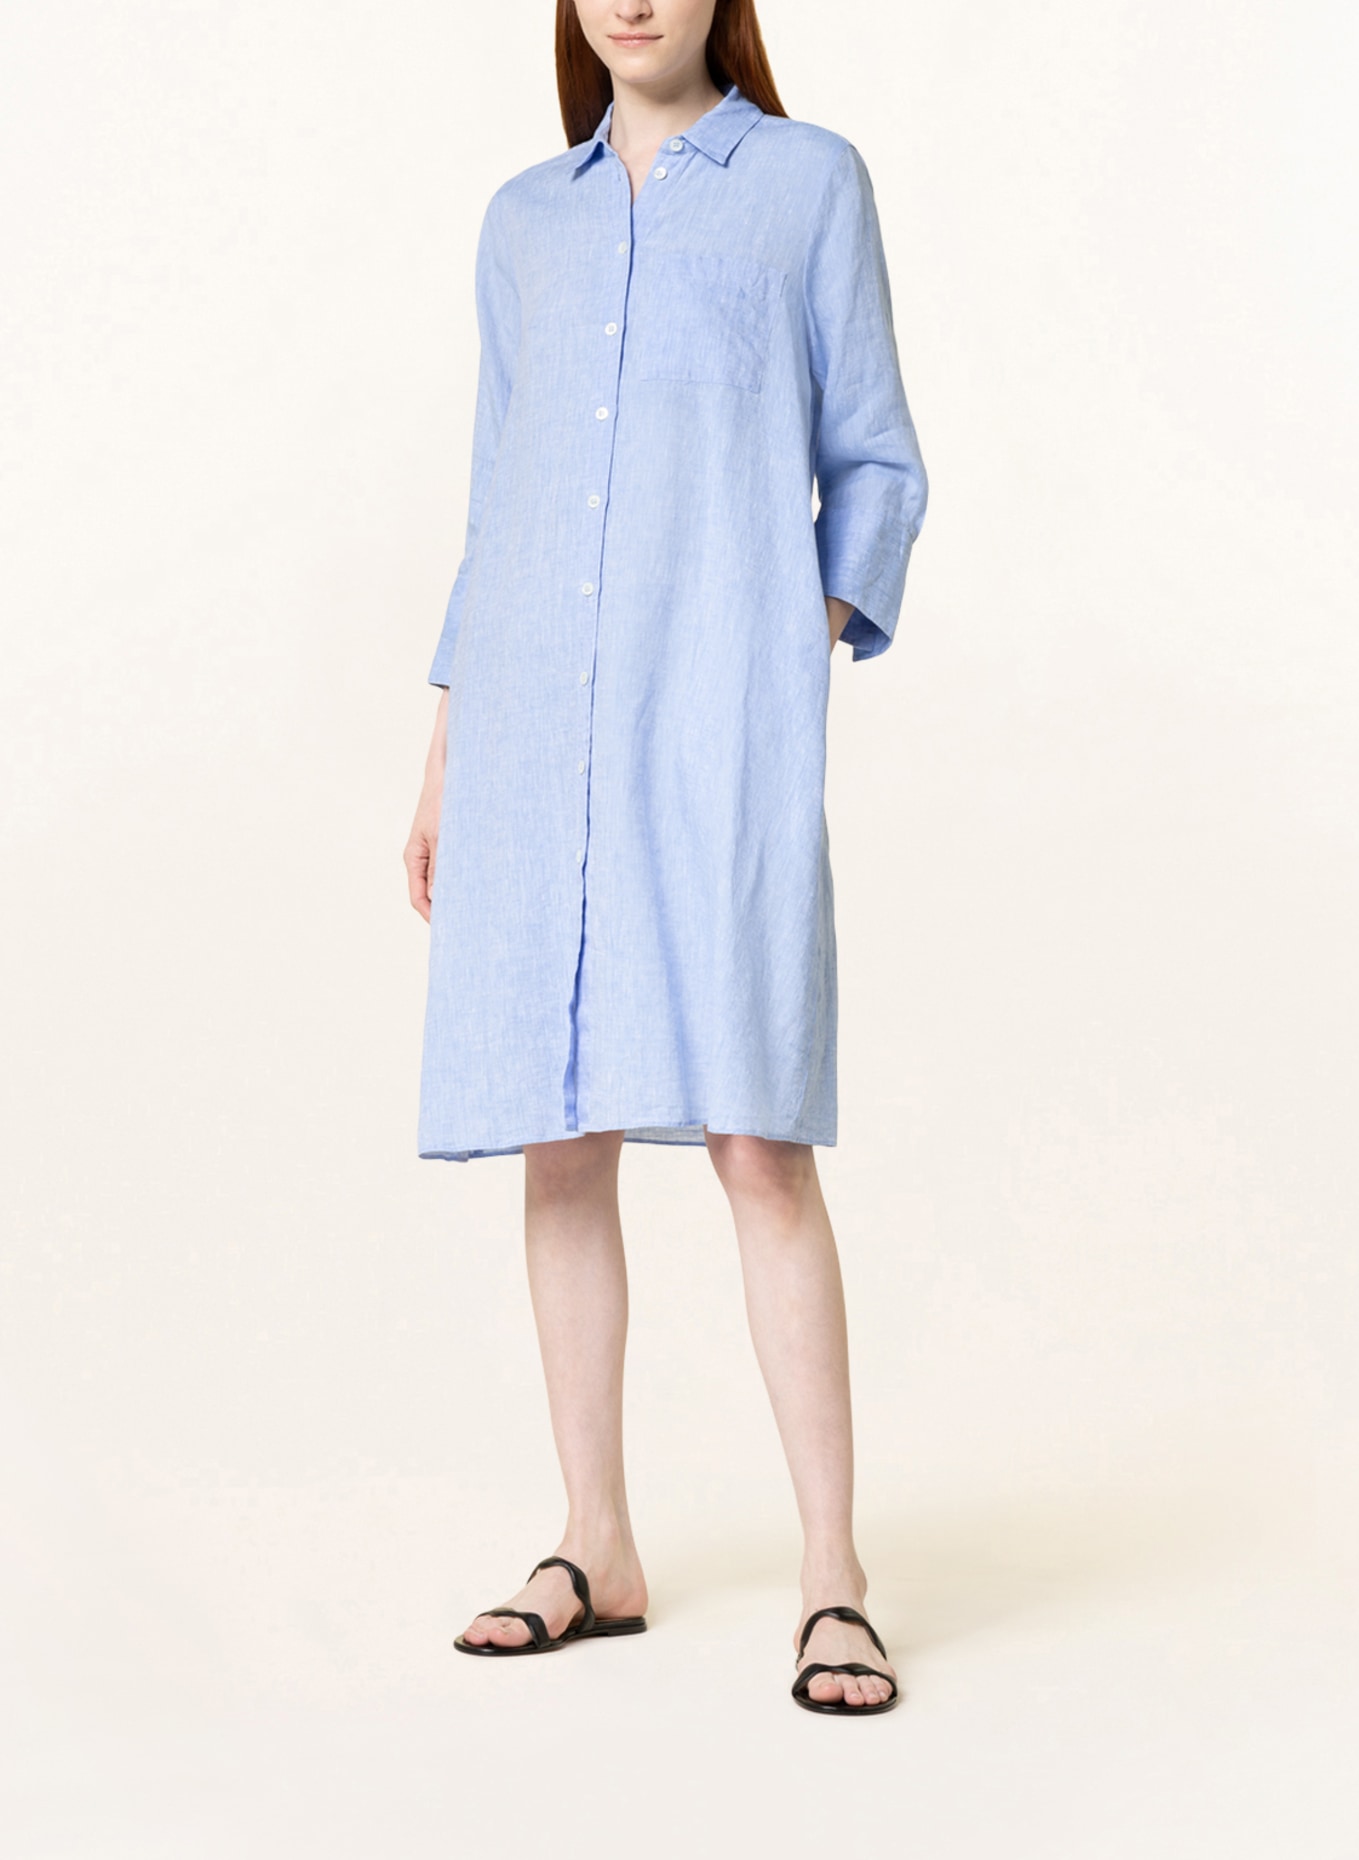 ROBERT FRIEDMAN Shirt dress LENA made of linen, Color: LIGHT BLUE (Image 2)